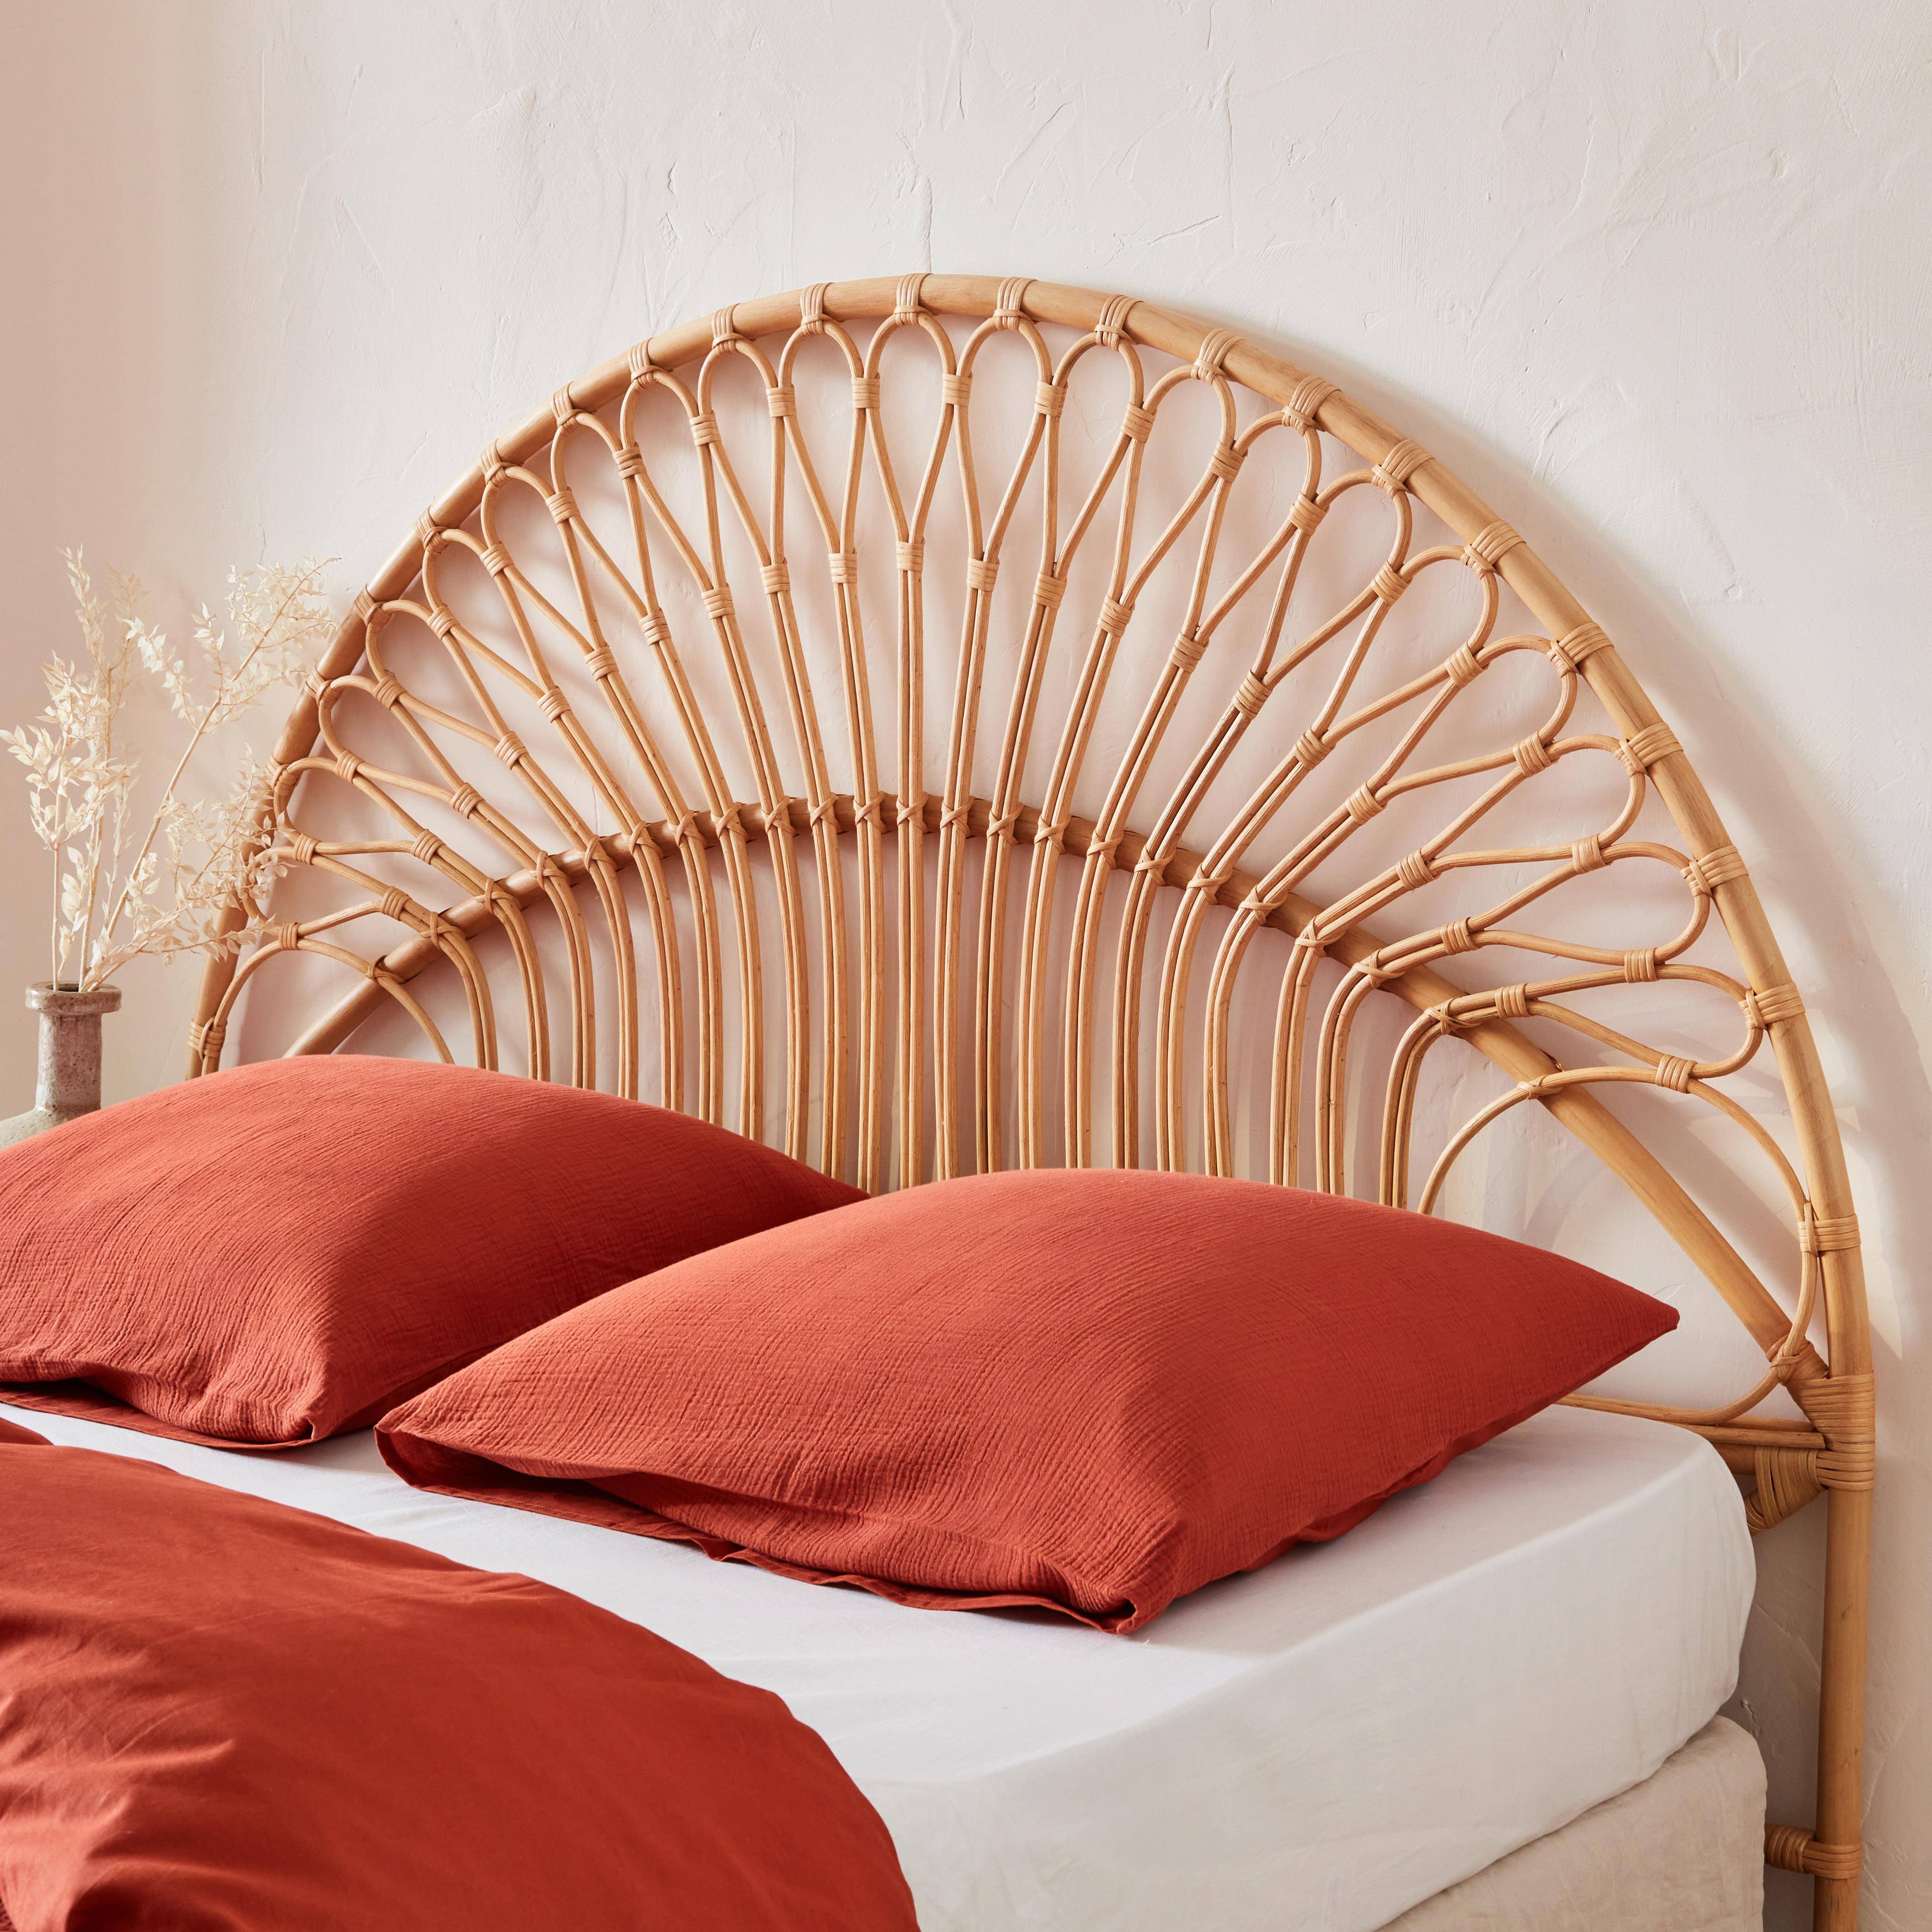 Tête de lit en rotin naturel compatible avec les lits d'une largeur de 160cm, L 160 x P3 x H130cm,sweeek,Photo1